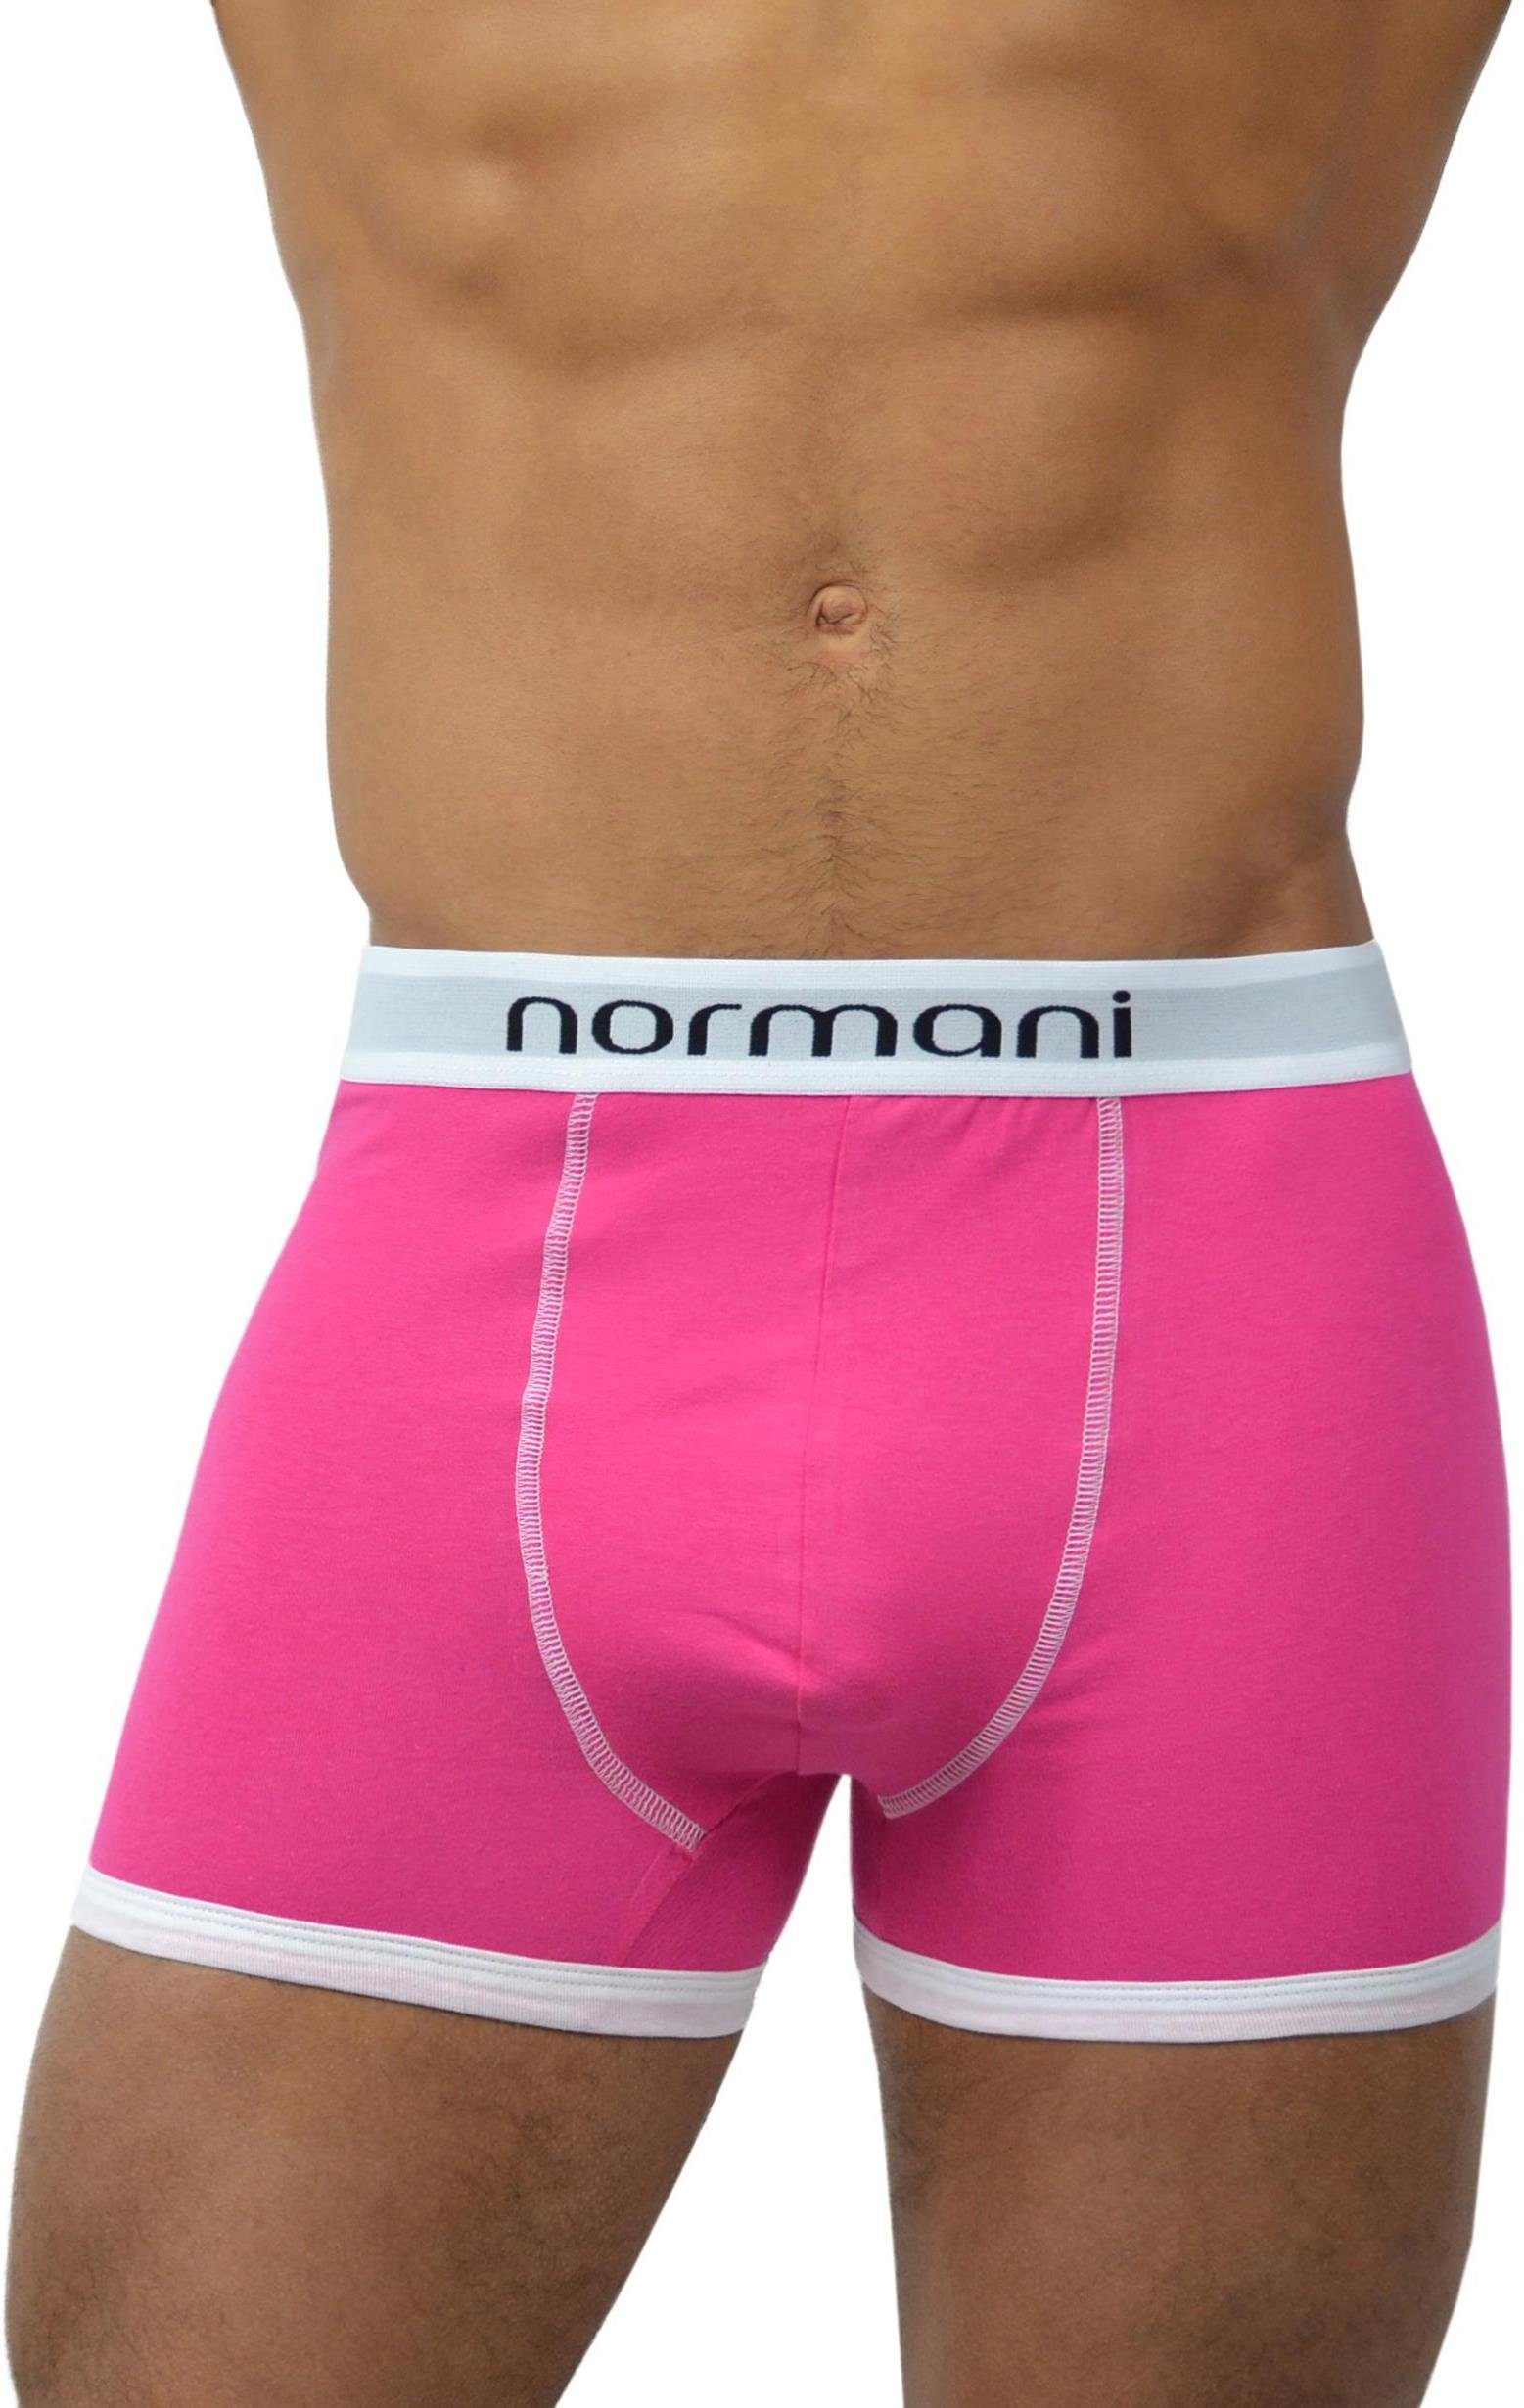 Boxer Unterhose 6 Retro Baumwolle Pink normani atmungsaktiver aus Boxershorts Retro Baumwolle Stück aus Retro